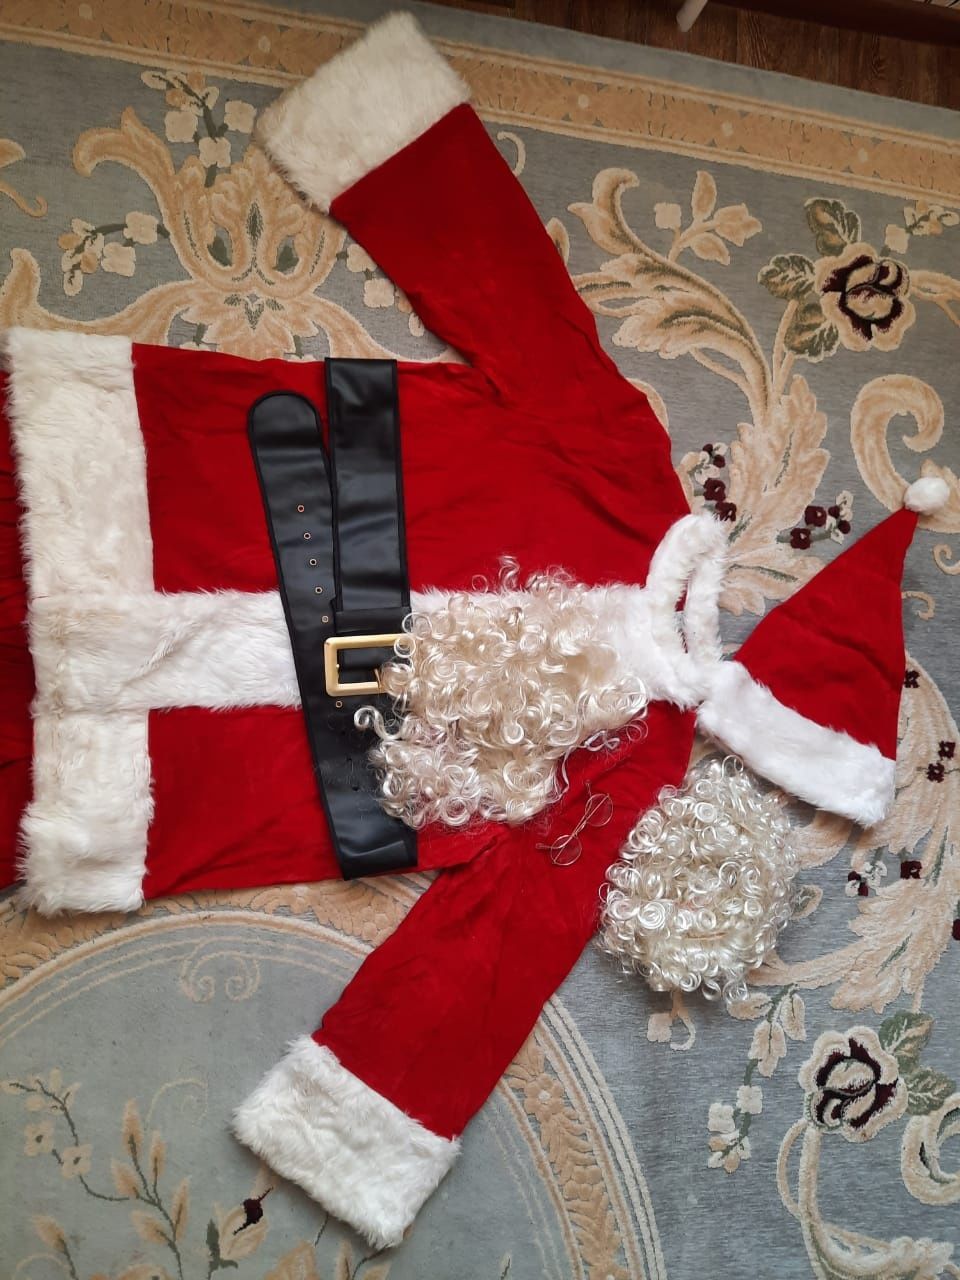 Продам костюм Деда Мороза/Санта Клауса